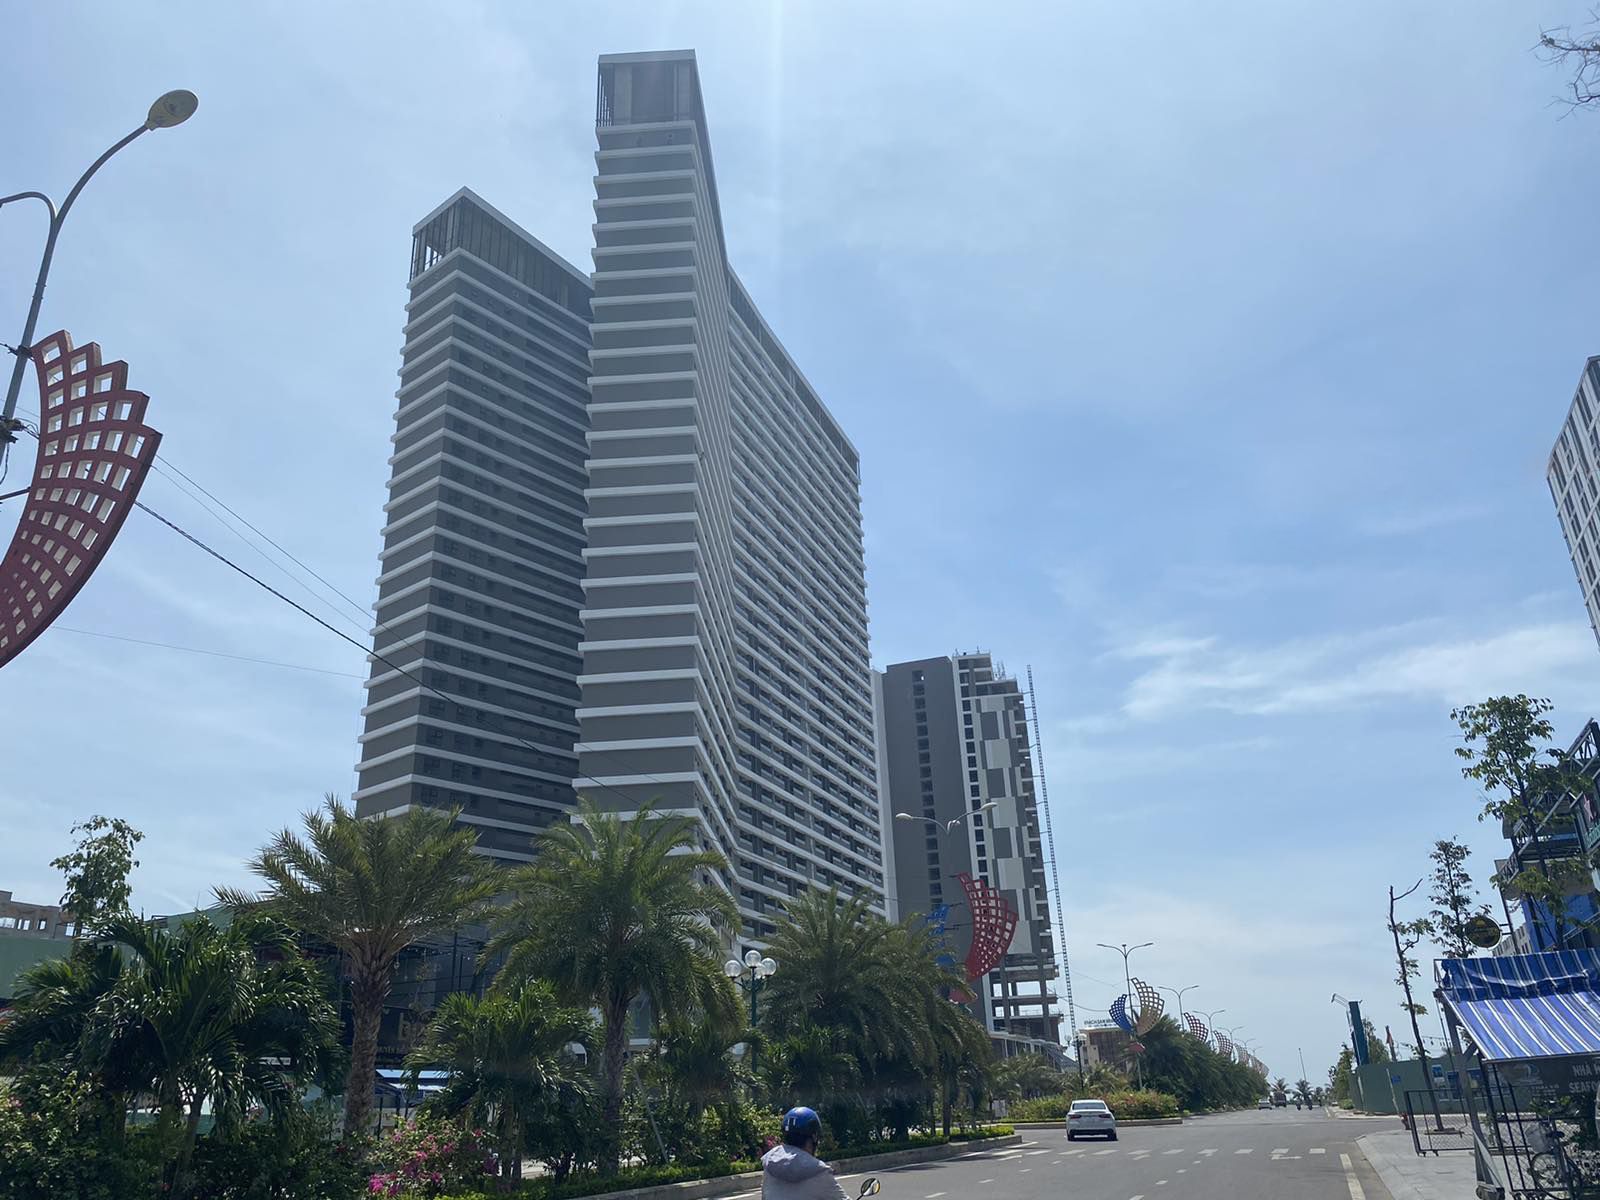 Dự án FLC Sea Tower Quy Nhon chuẩn bị bàn giao căn hộ từ tháng 10.